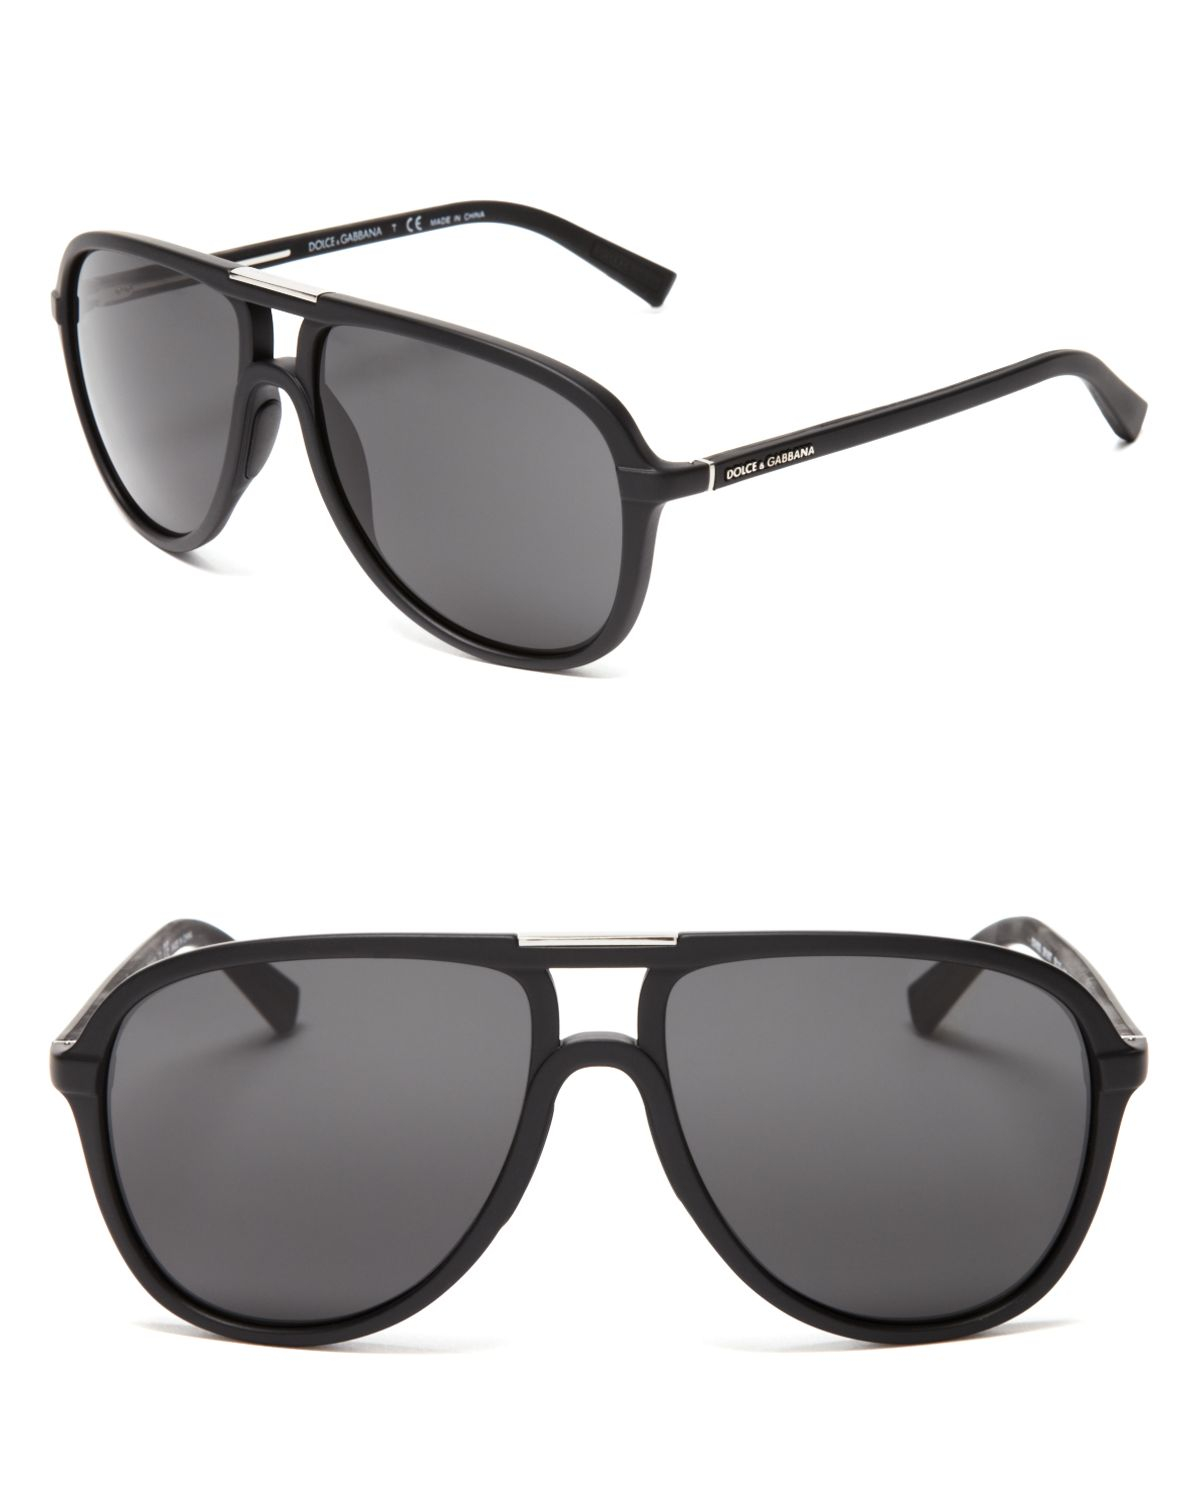 Dolce & Gabbana Dolce&Gabbana Sport-Inspired Aviator Sunglasses in ...